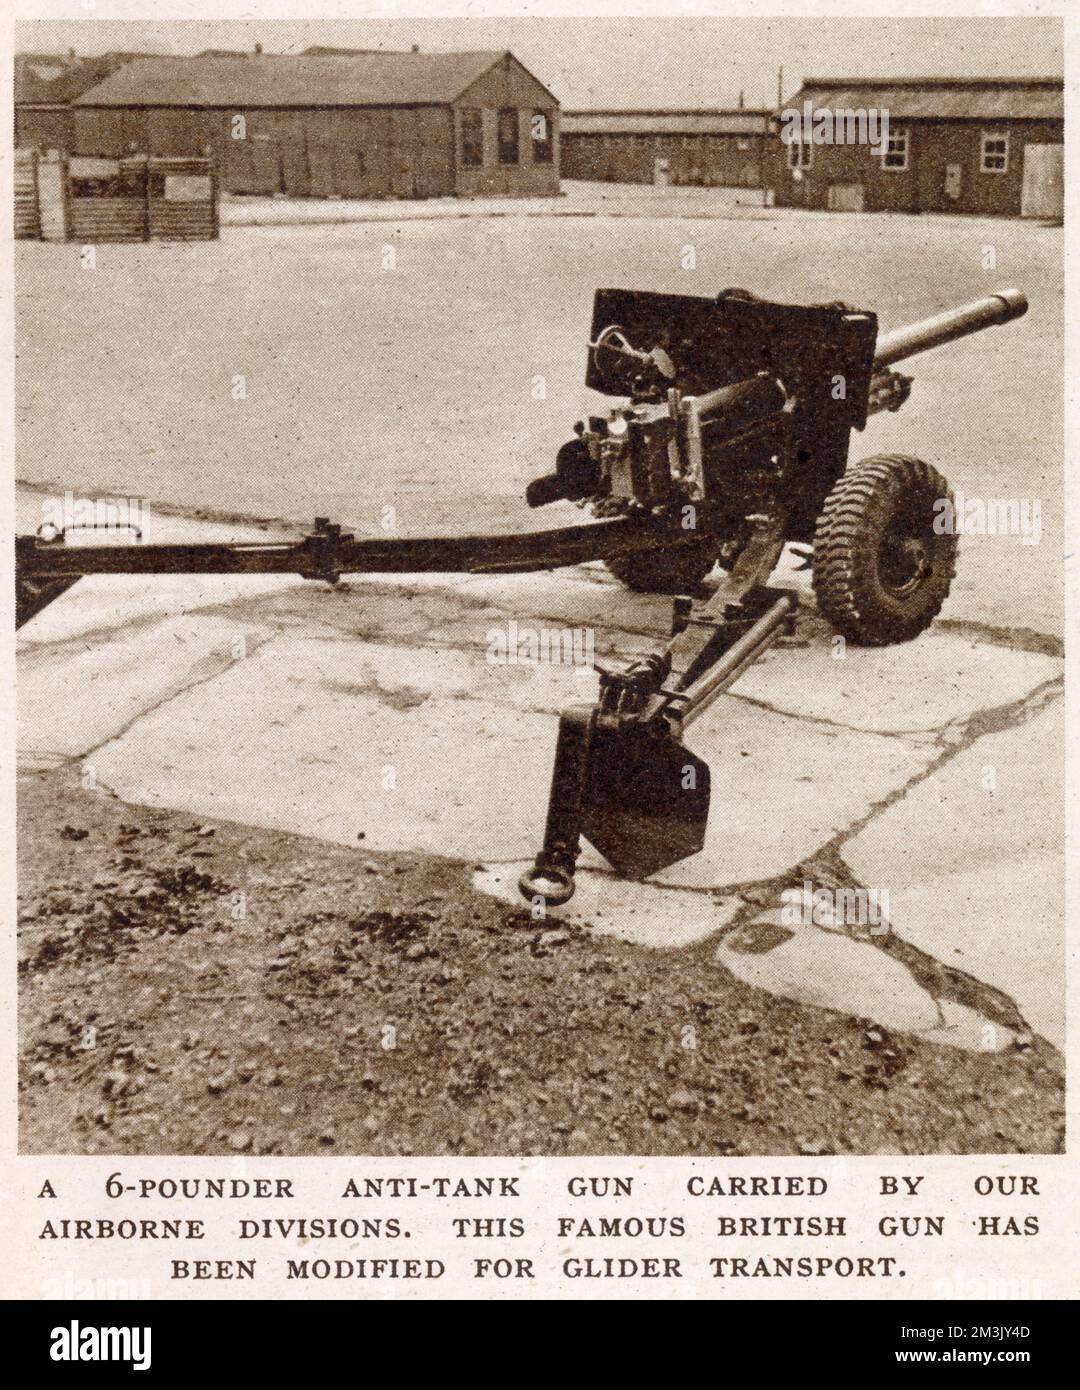 Britische 6-Panzerabwehrwaffe, auf einem Paradeplatz der britischen Armee, 1944. Diese Art von Waffe wurde von der britischen Armee ausgiebig eingesetzt, unter anderem von der British First Airborne Division in Arnheim, während der Operation "Market Garden" im September 1944. Stockfoto